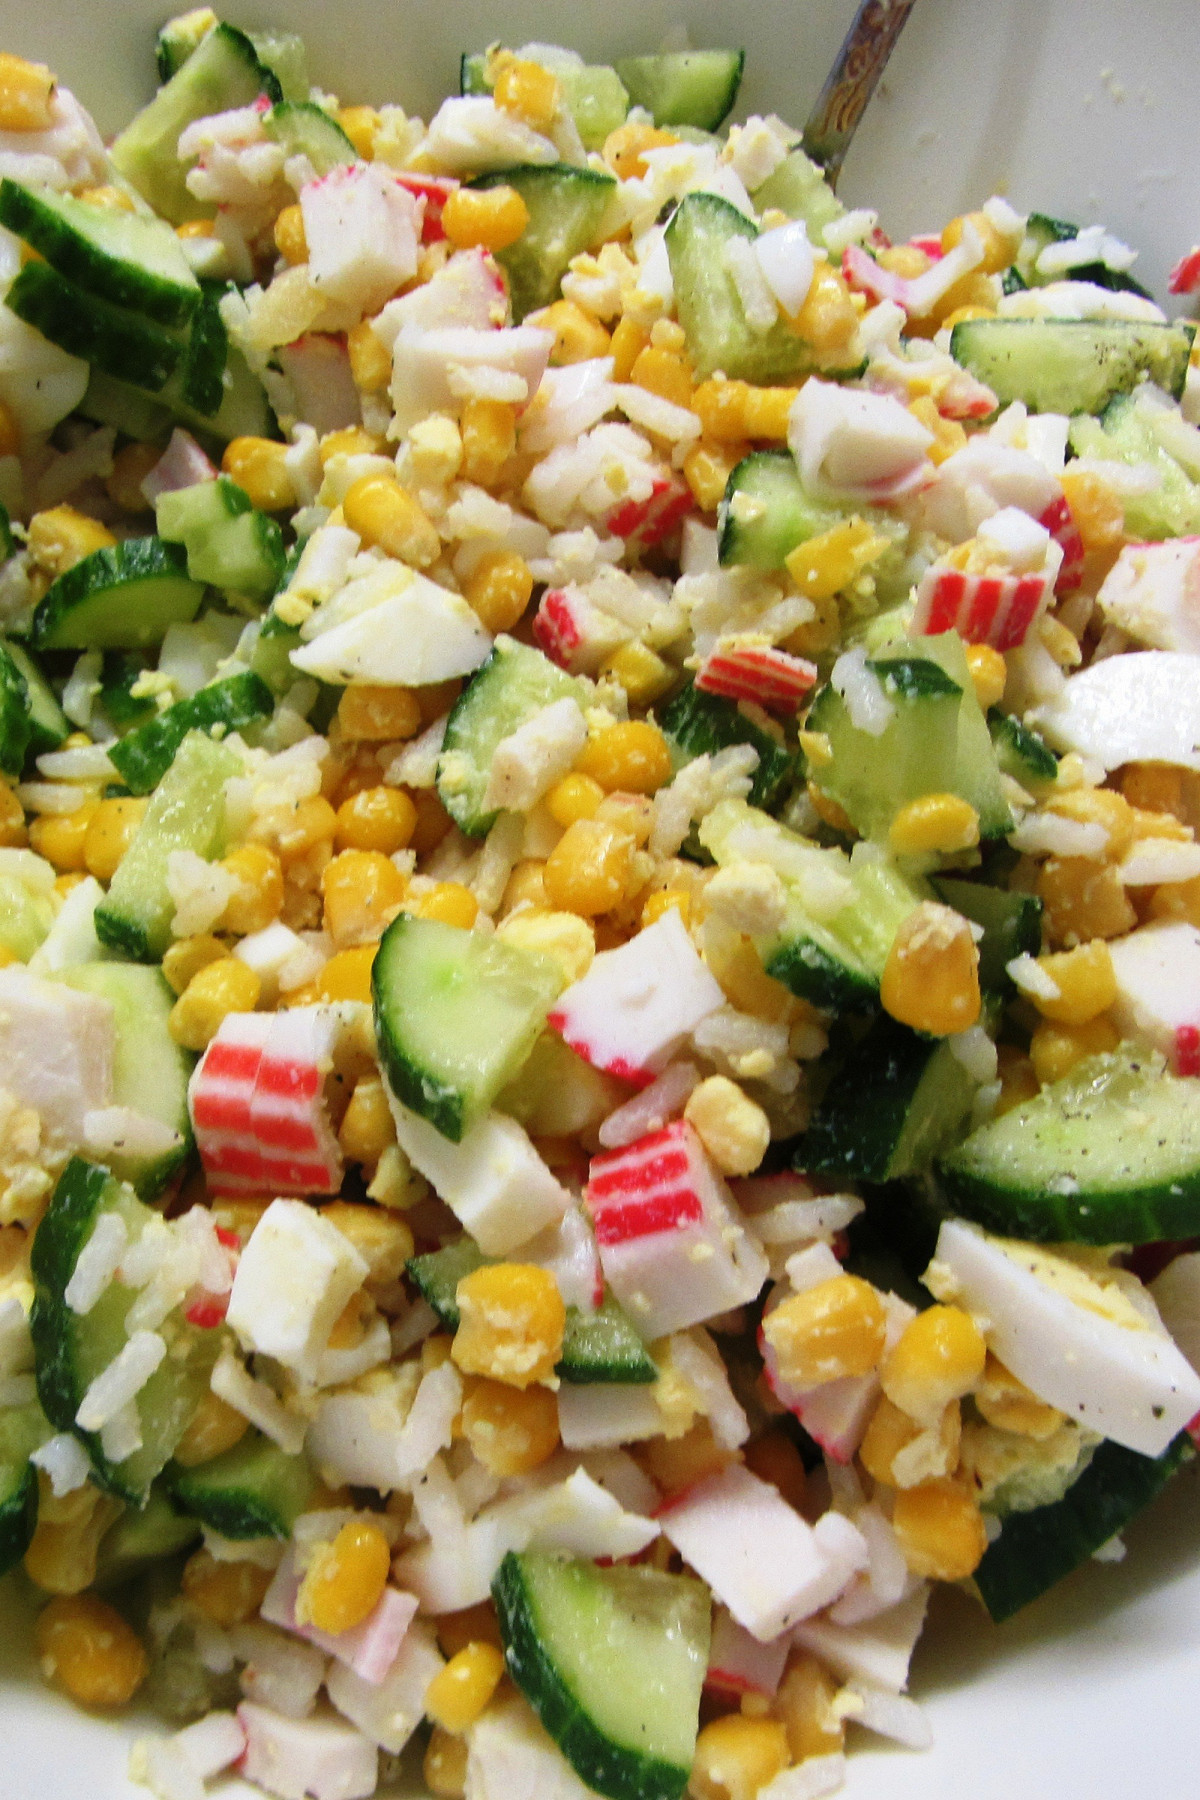 Крабовый салат с мясом краба натуральным, кукурузой, рисом и майонезом простой рецепт